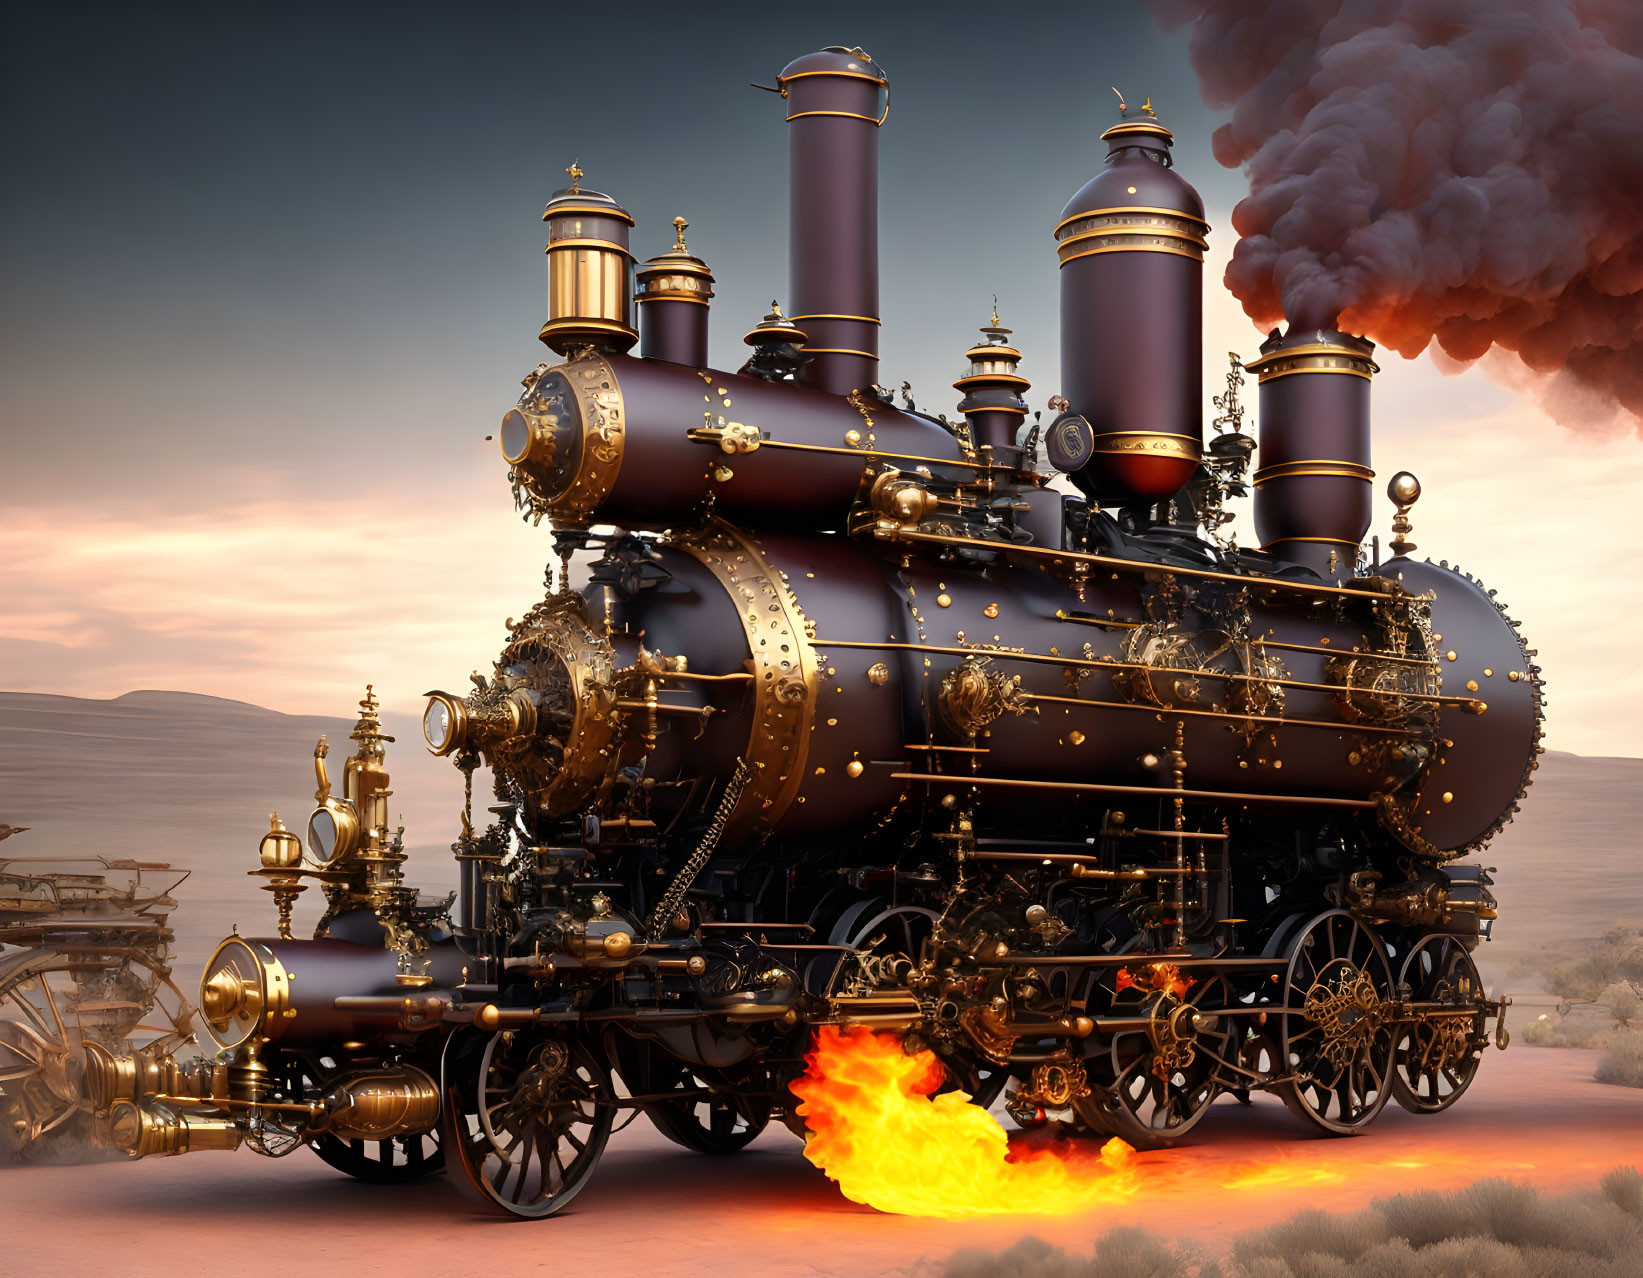 Complex steampunk steam engine